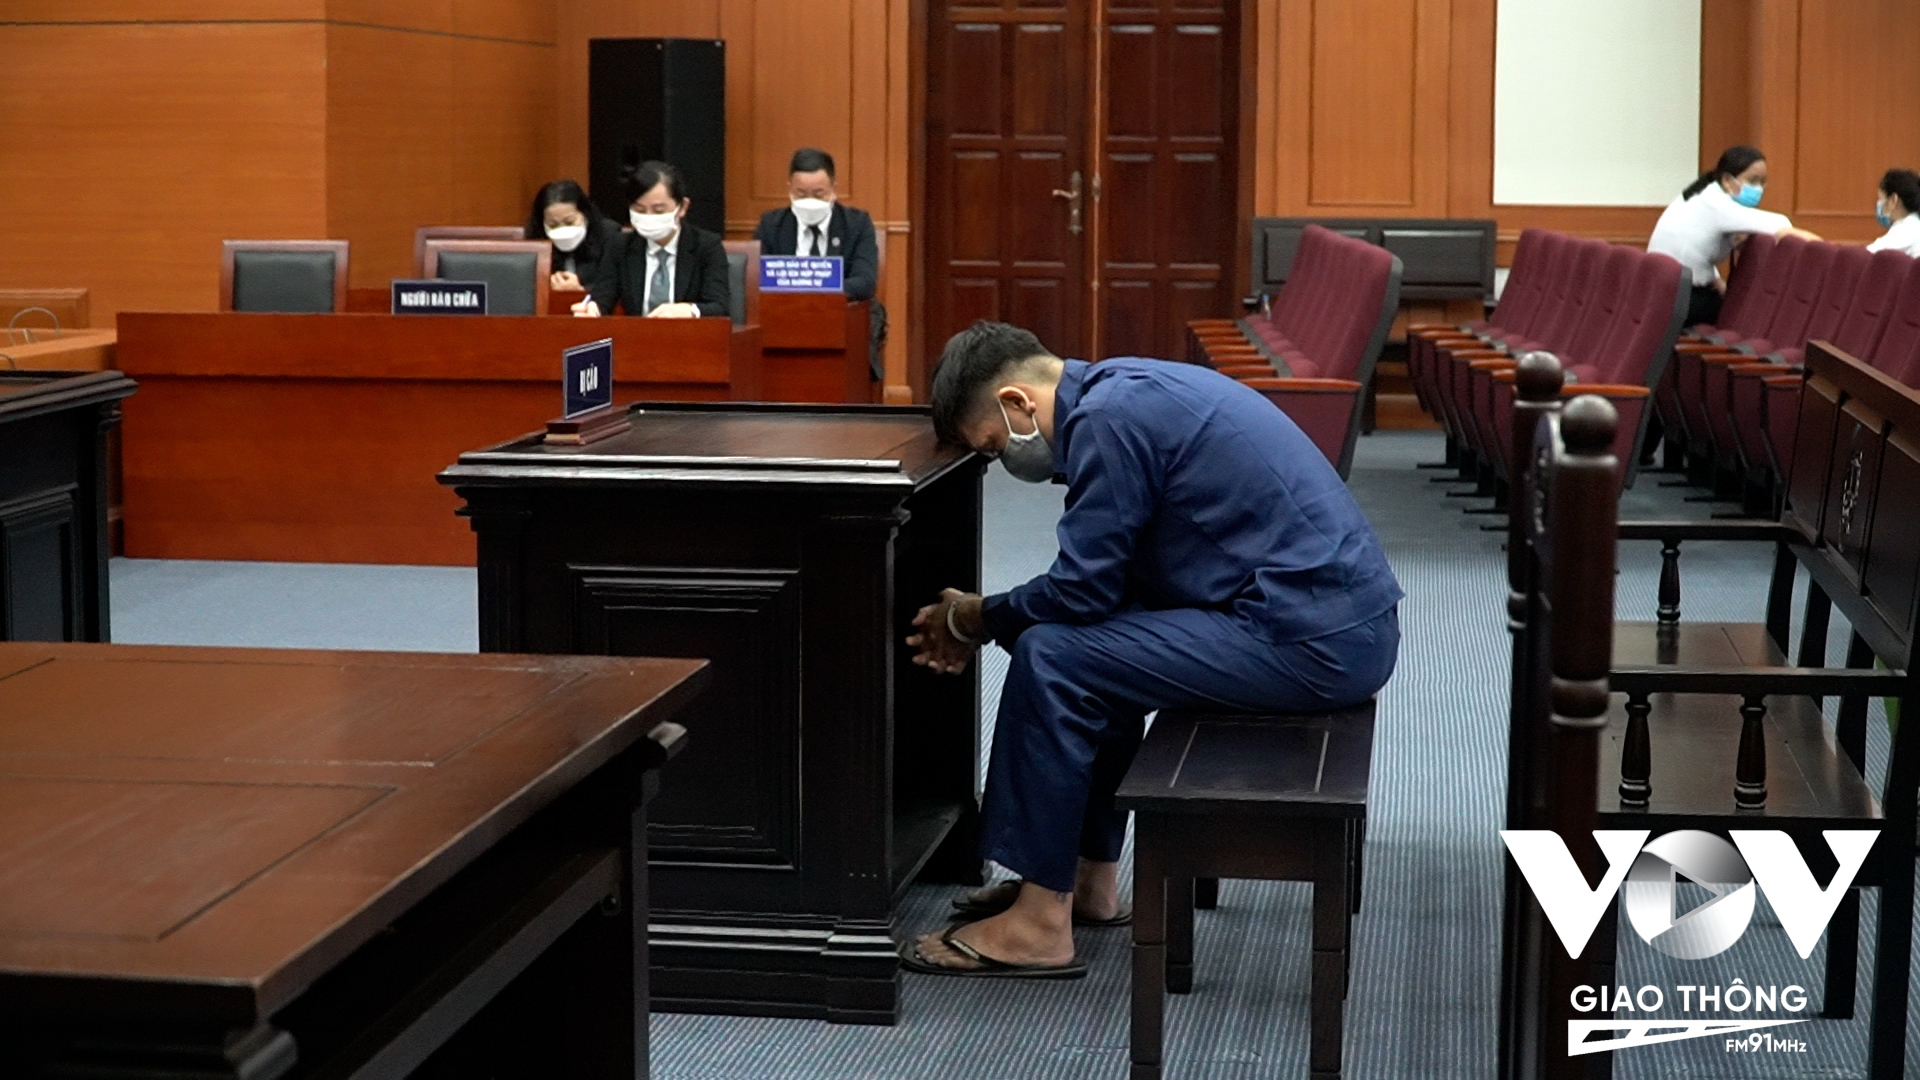 Bị cáo Nguyễn Kim Trung Thái vẫn chịu mức án 3 năm tù về tội hành hạ người khác, 5 năm tù về tội che giấu tội phạm